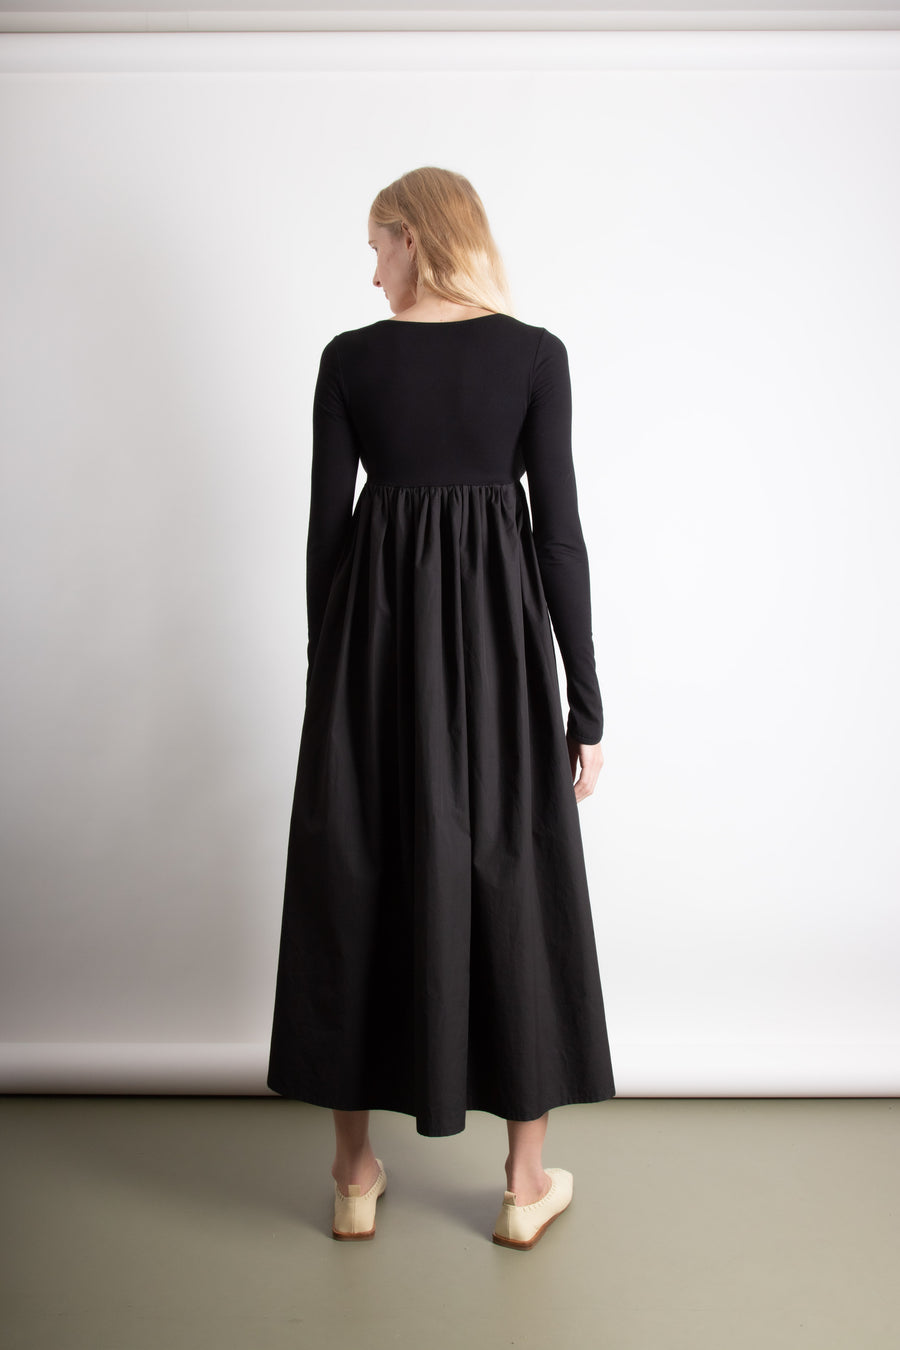 L/S Tri Maxi Dress - Black (PO)